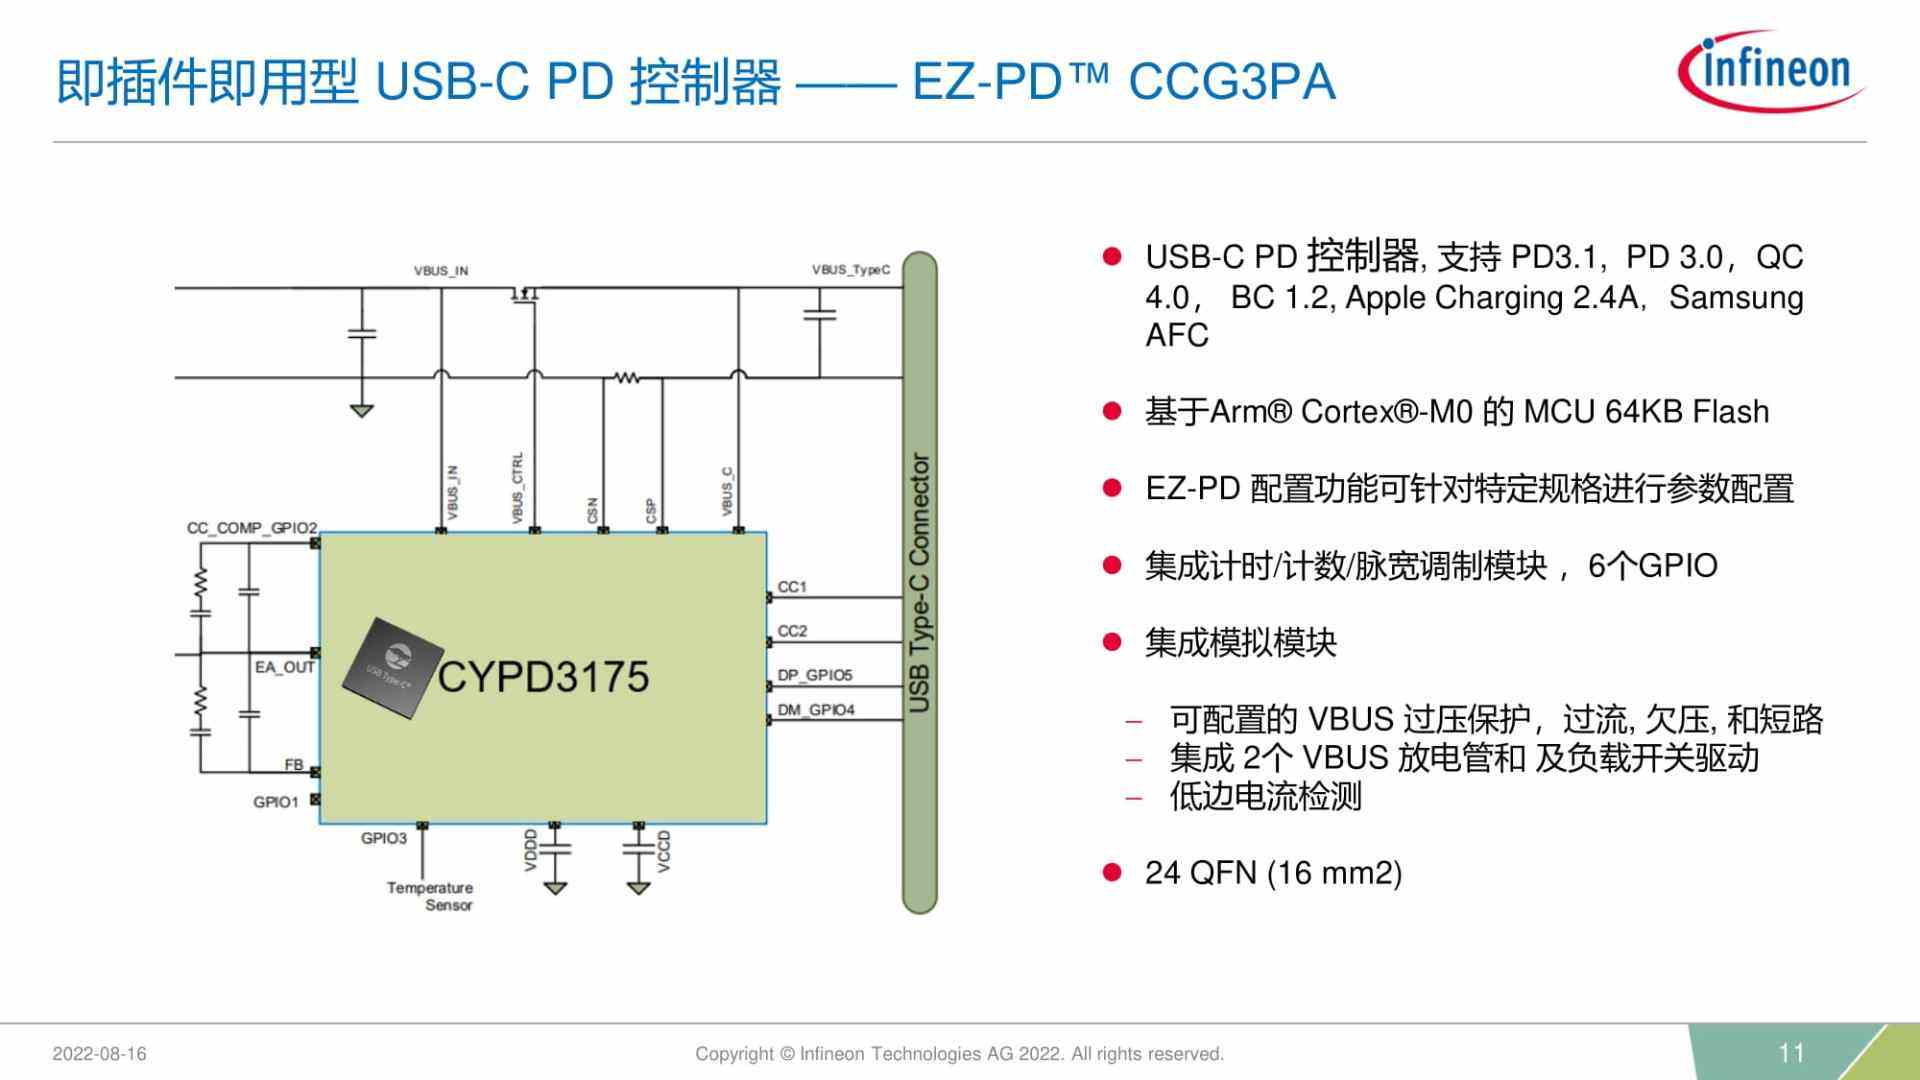 英飞凌推出二合一控制器XDPS2201，集成PFC+HFB控制-充电头网